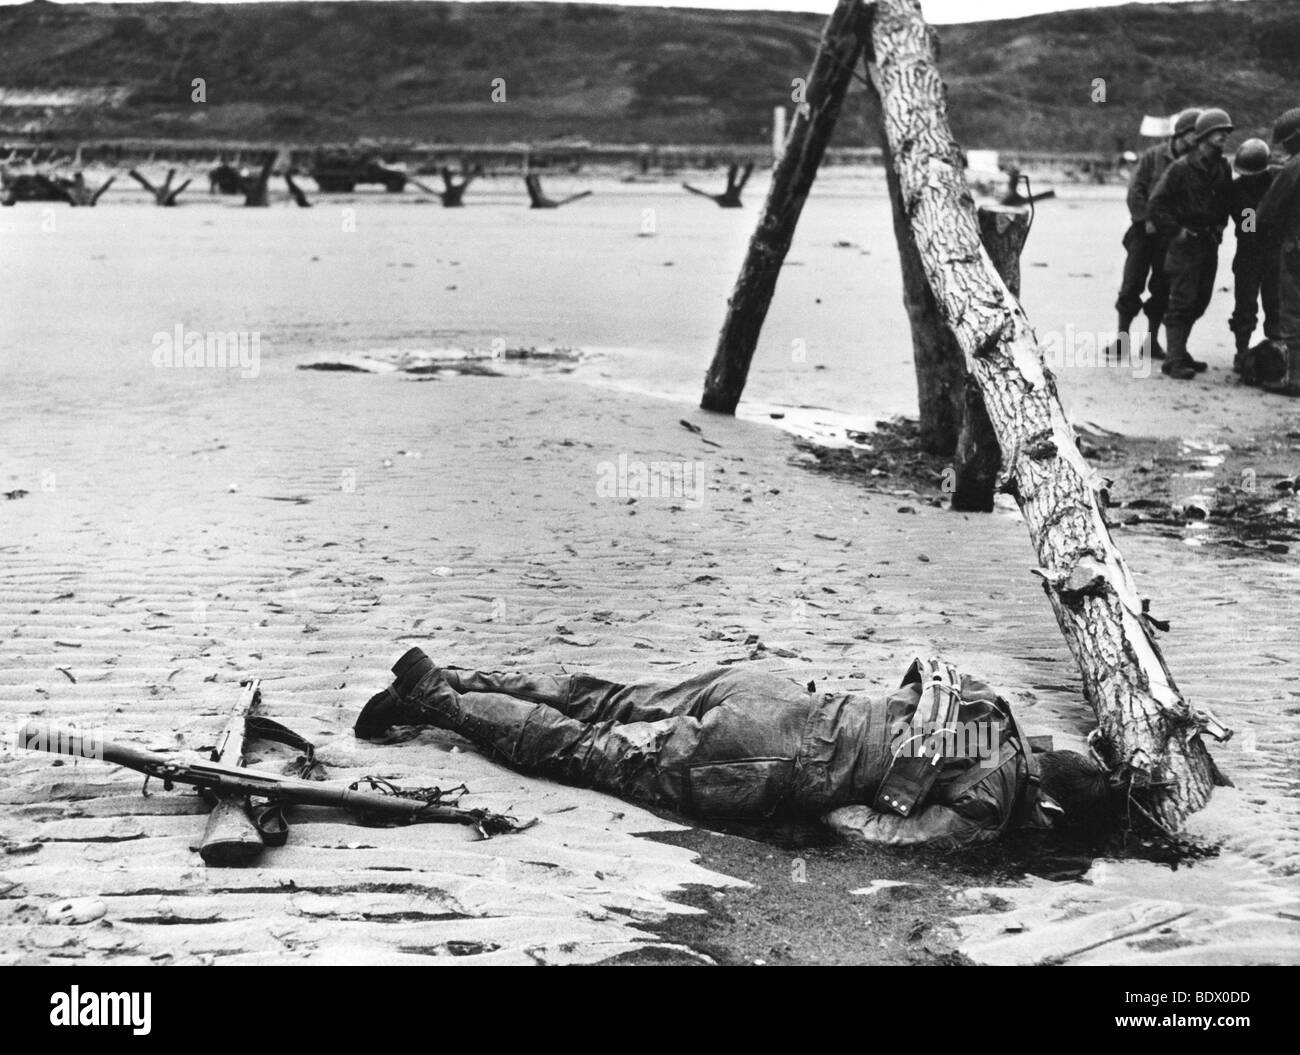 6 juin 1944 - Dead soldat américain sur Omaha Beach à marée montante recule exposant les défenses allemandes. Remarque traversé rifles en hommage. Banque D'Images